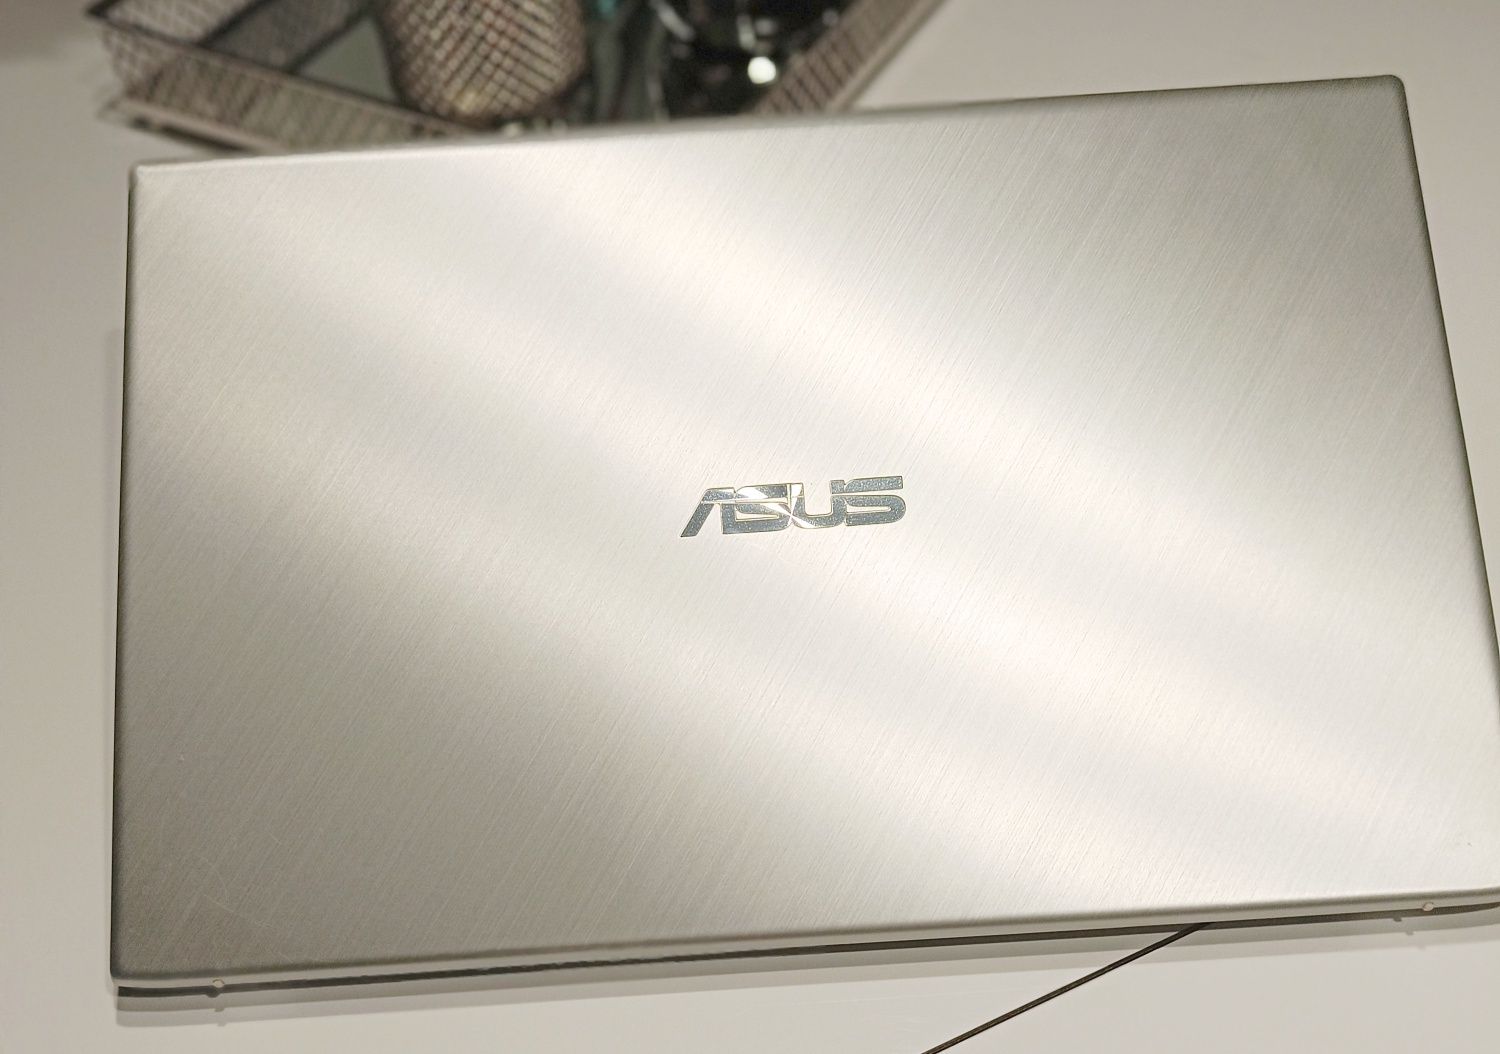 ASUS VivoBook A512JA-BQ203T 15.6" i5-1035G1 8GB RAM 512GB SSD